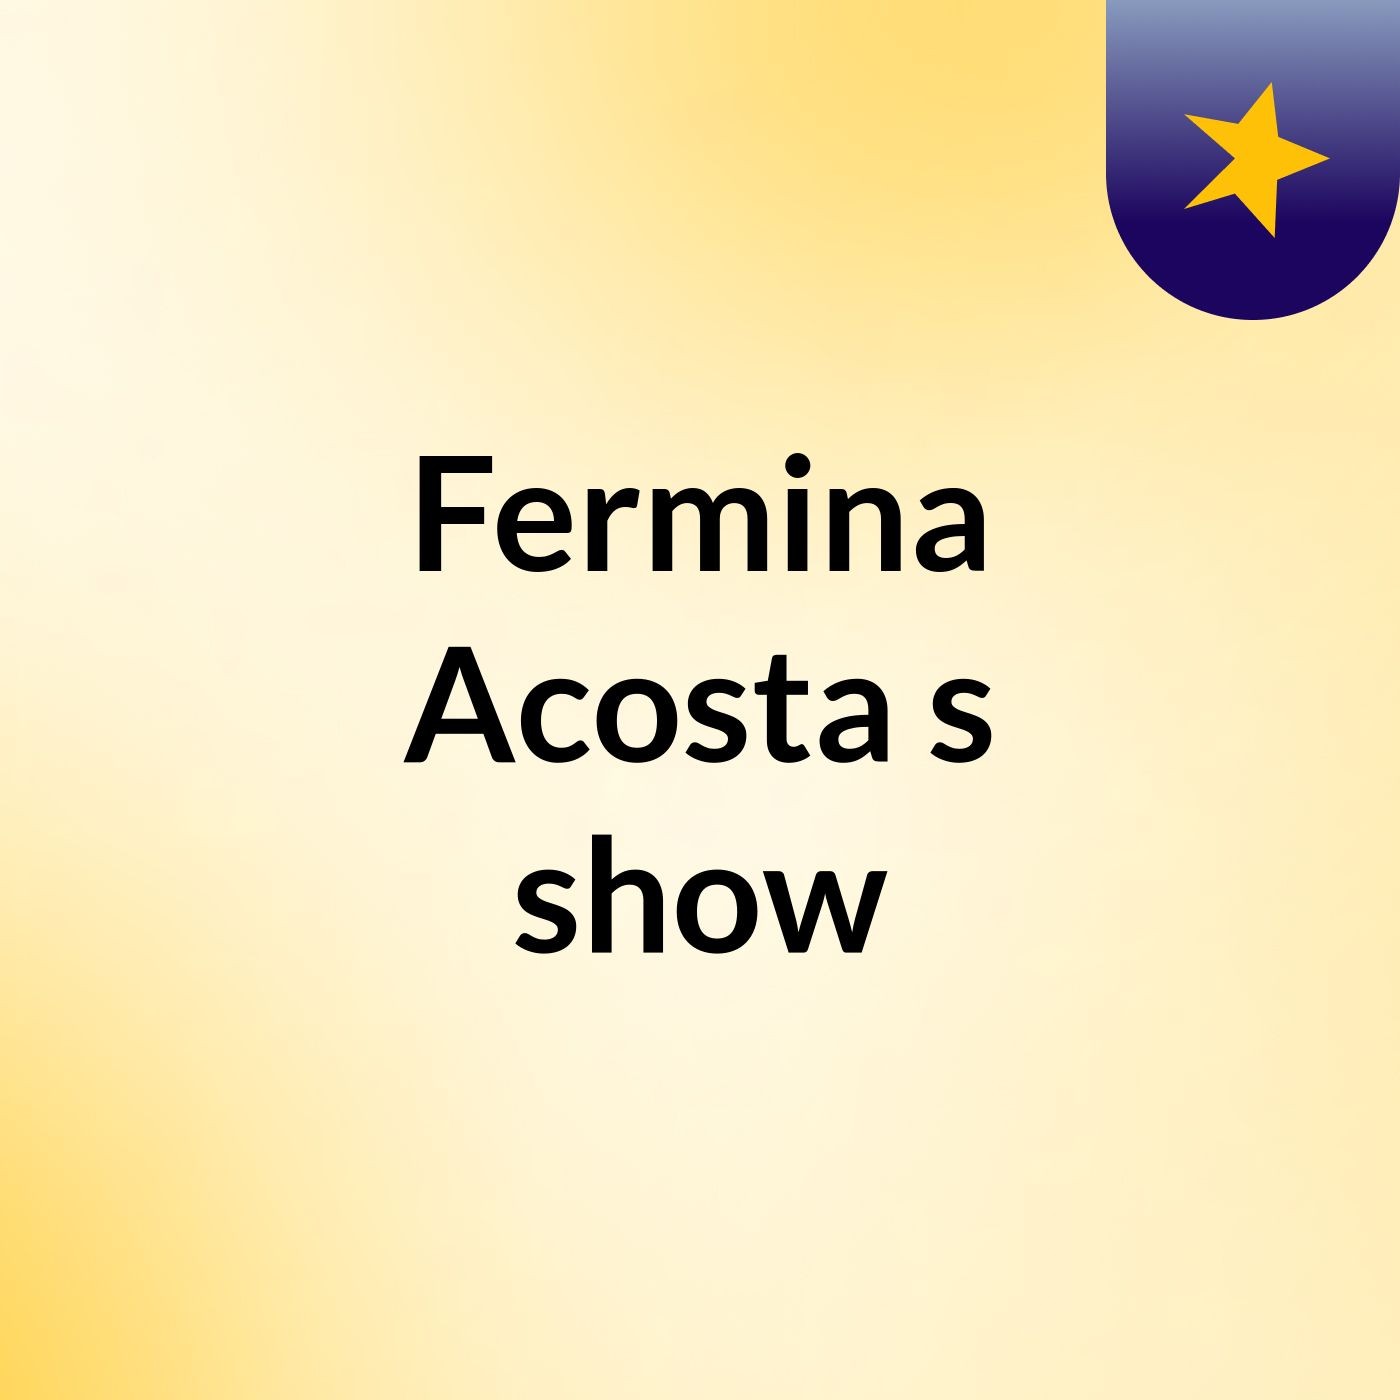 Fermina Acosta's show